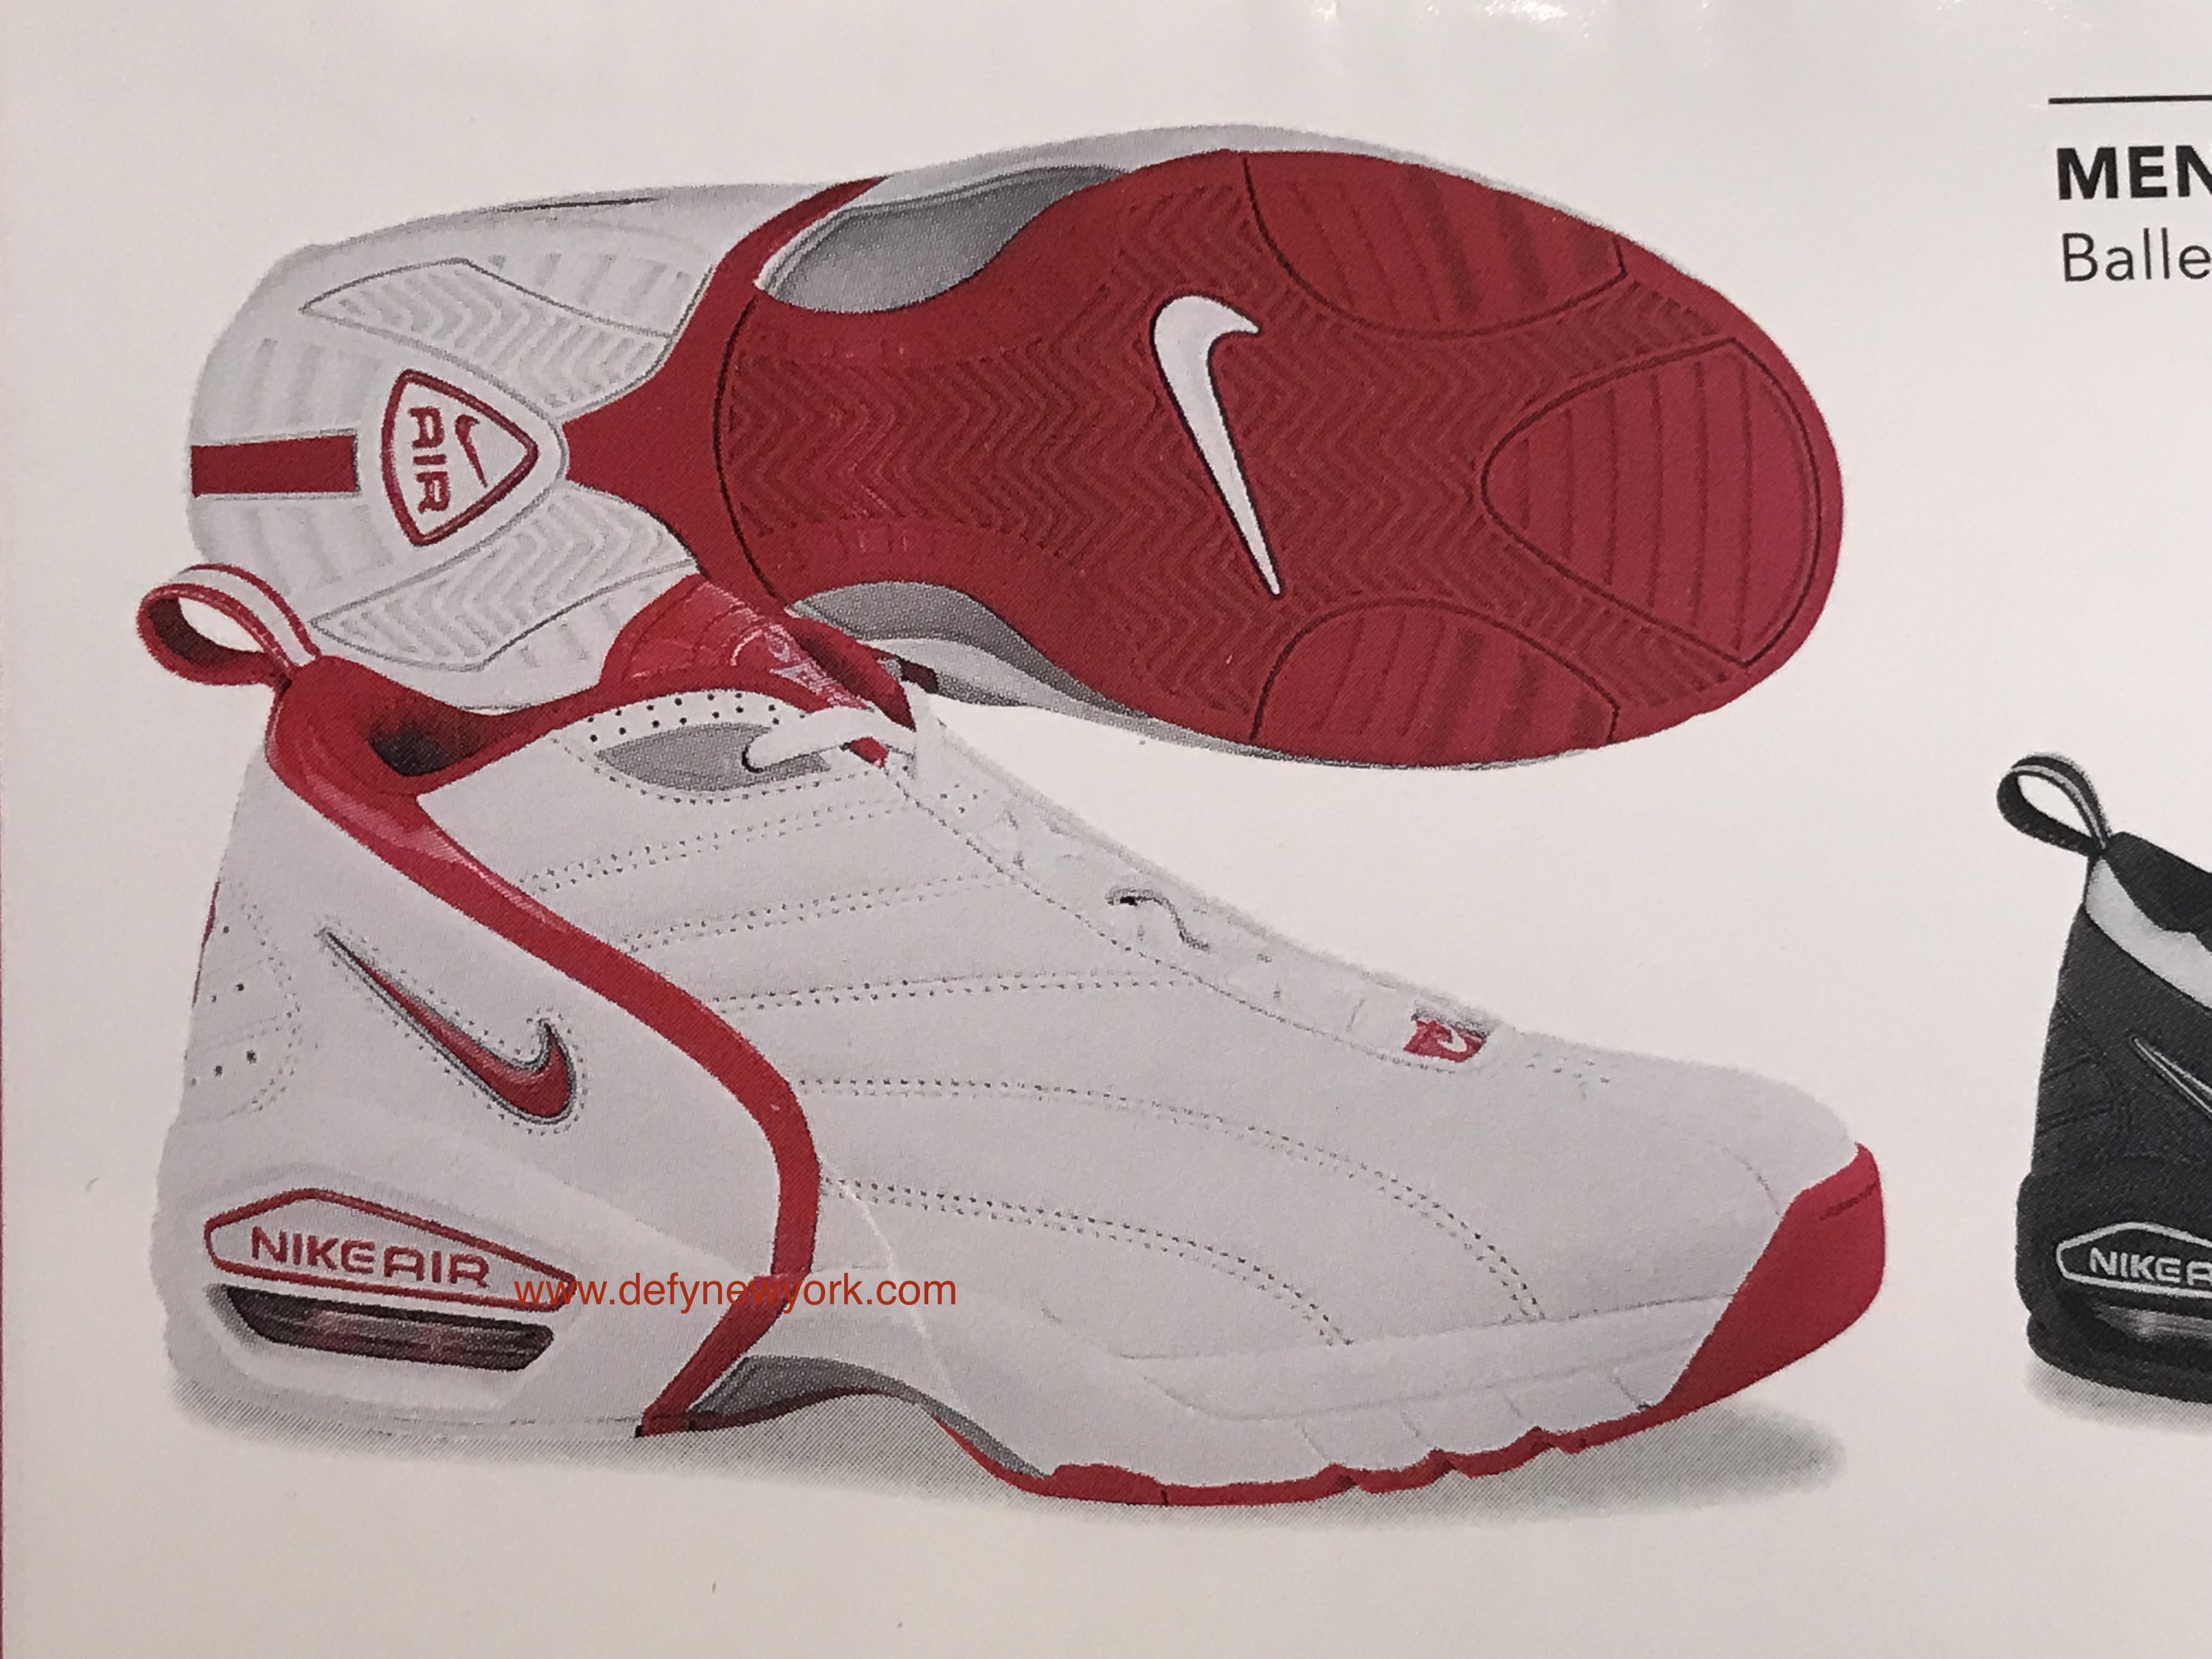 Nike Air Retaliate Basketball Shoe 2003